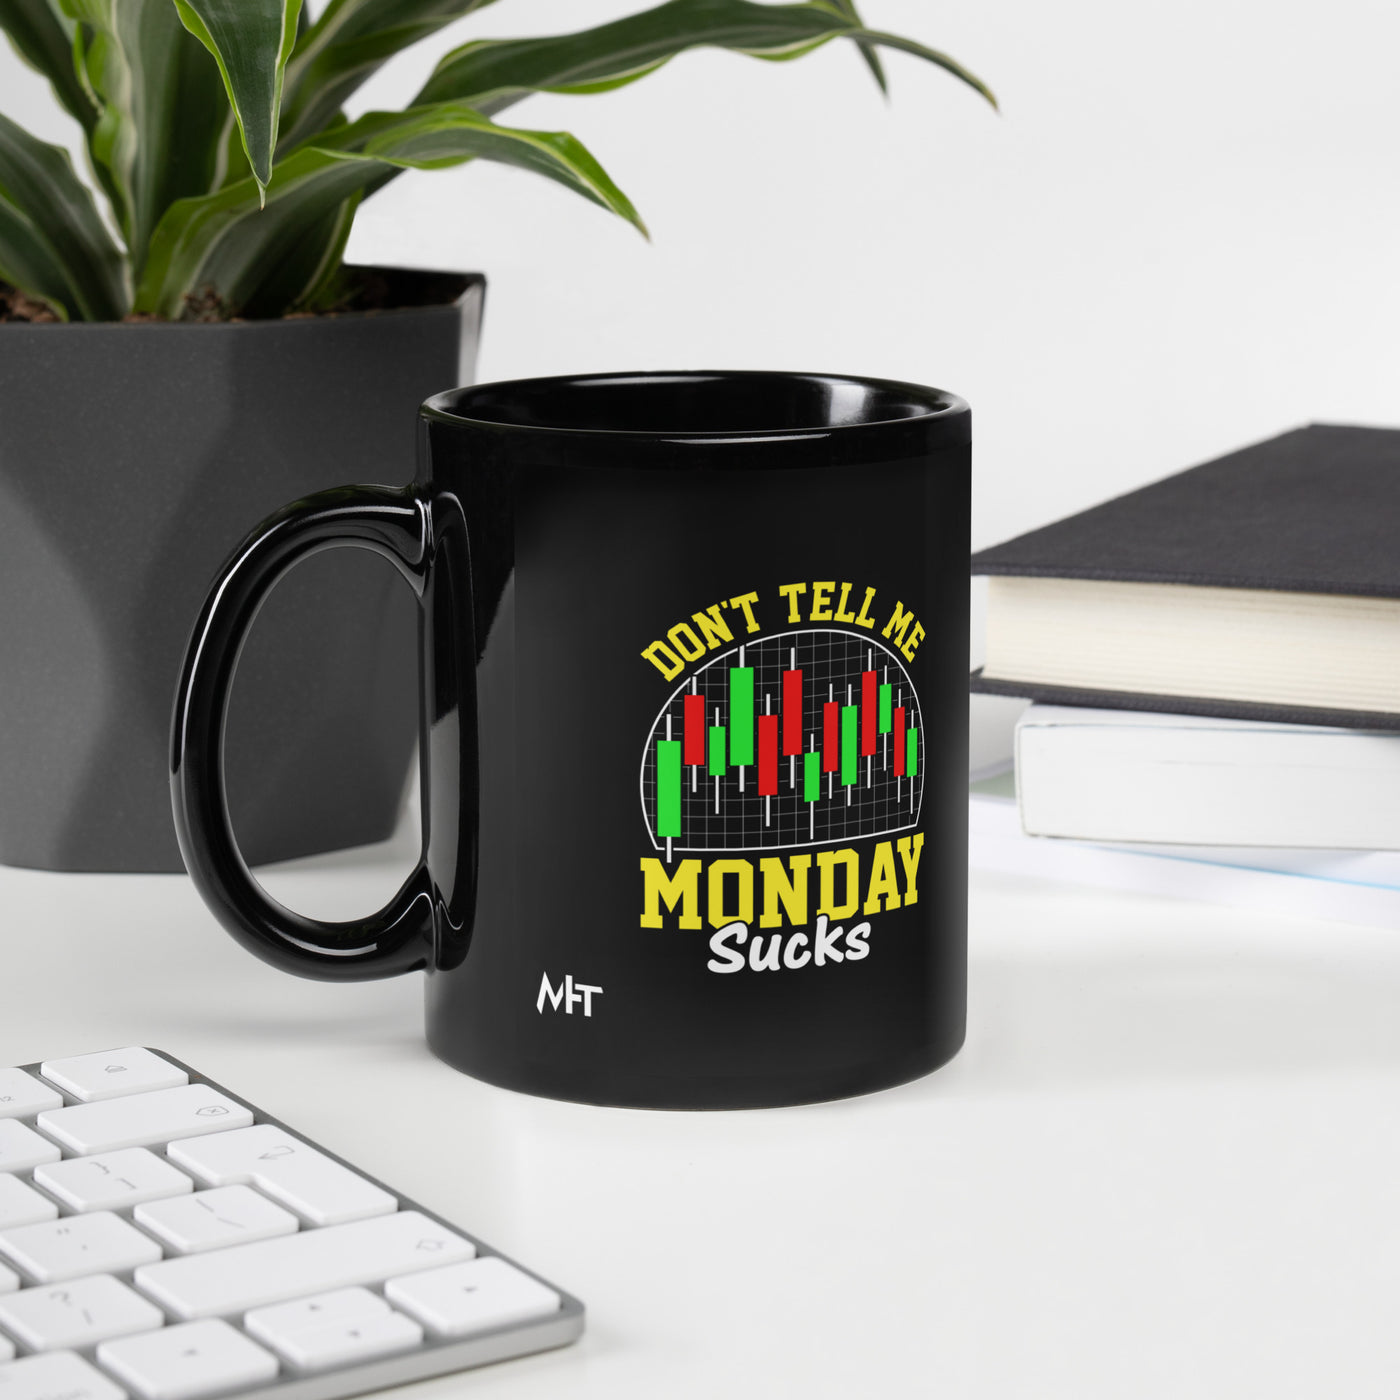 Don't Tell me Monday Sucks - Mug